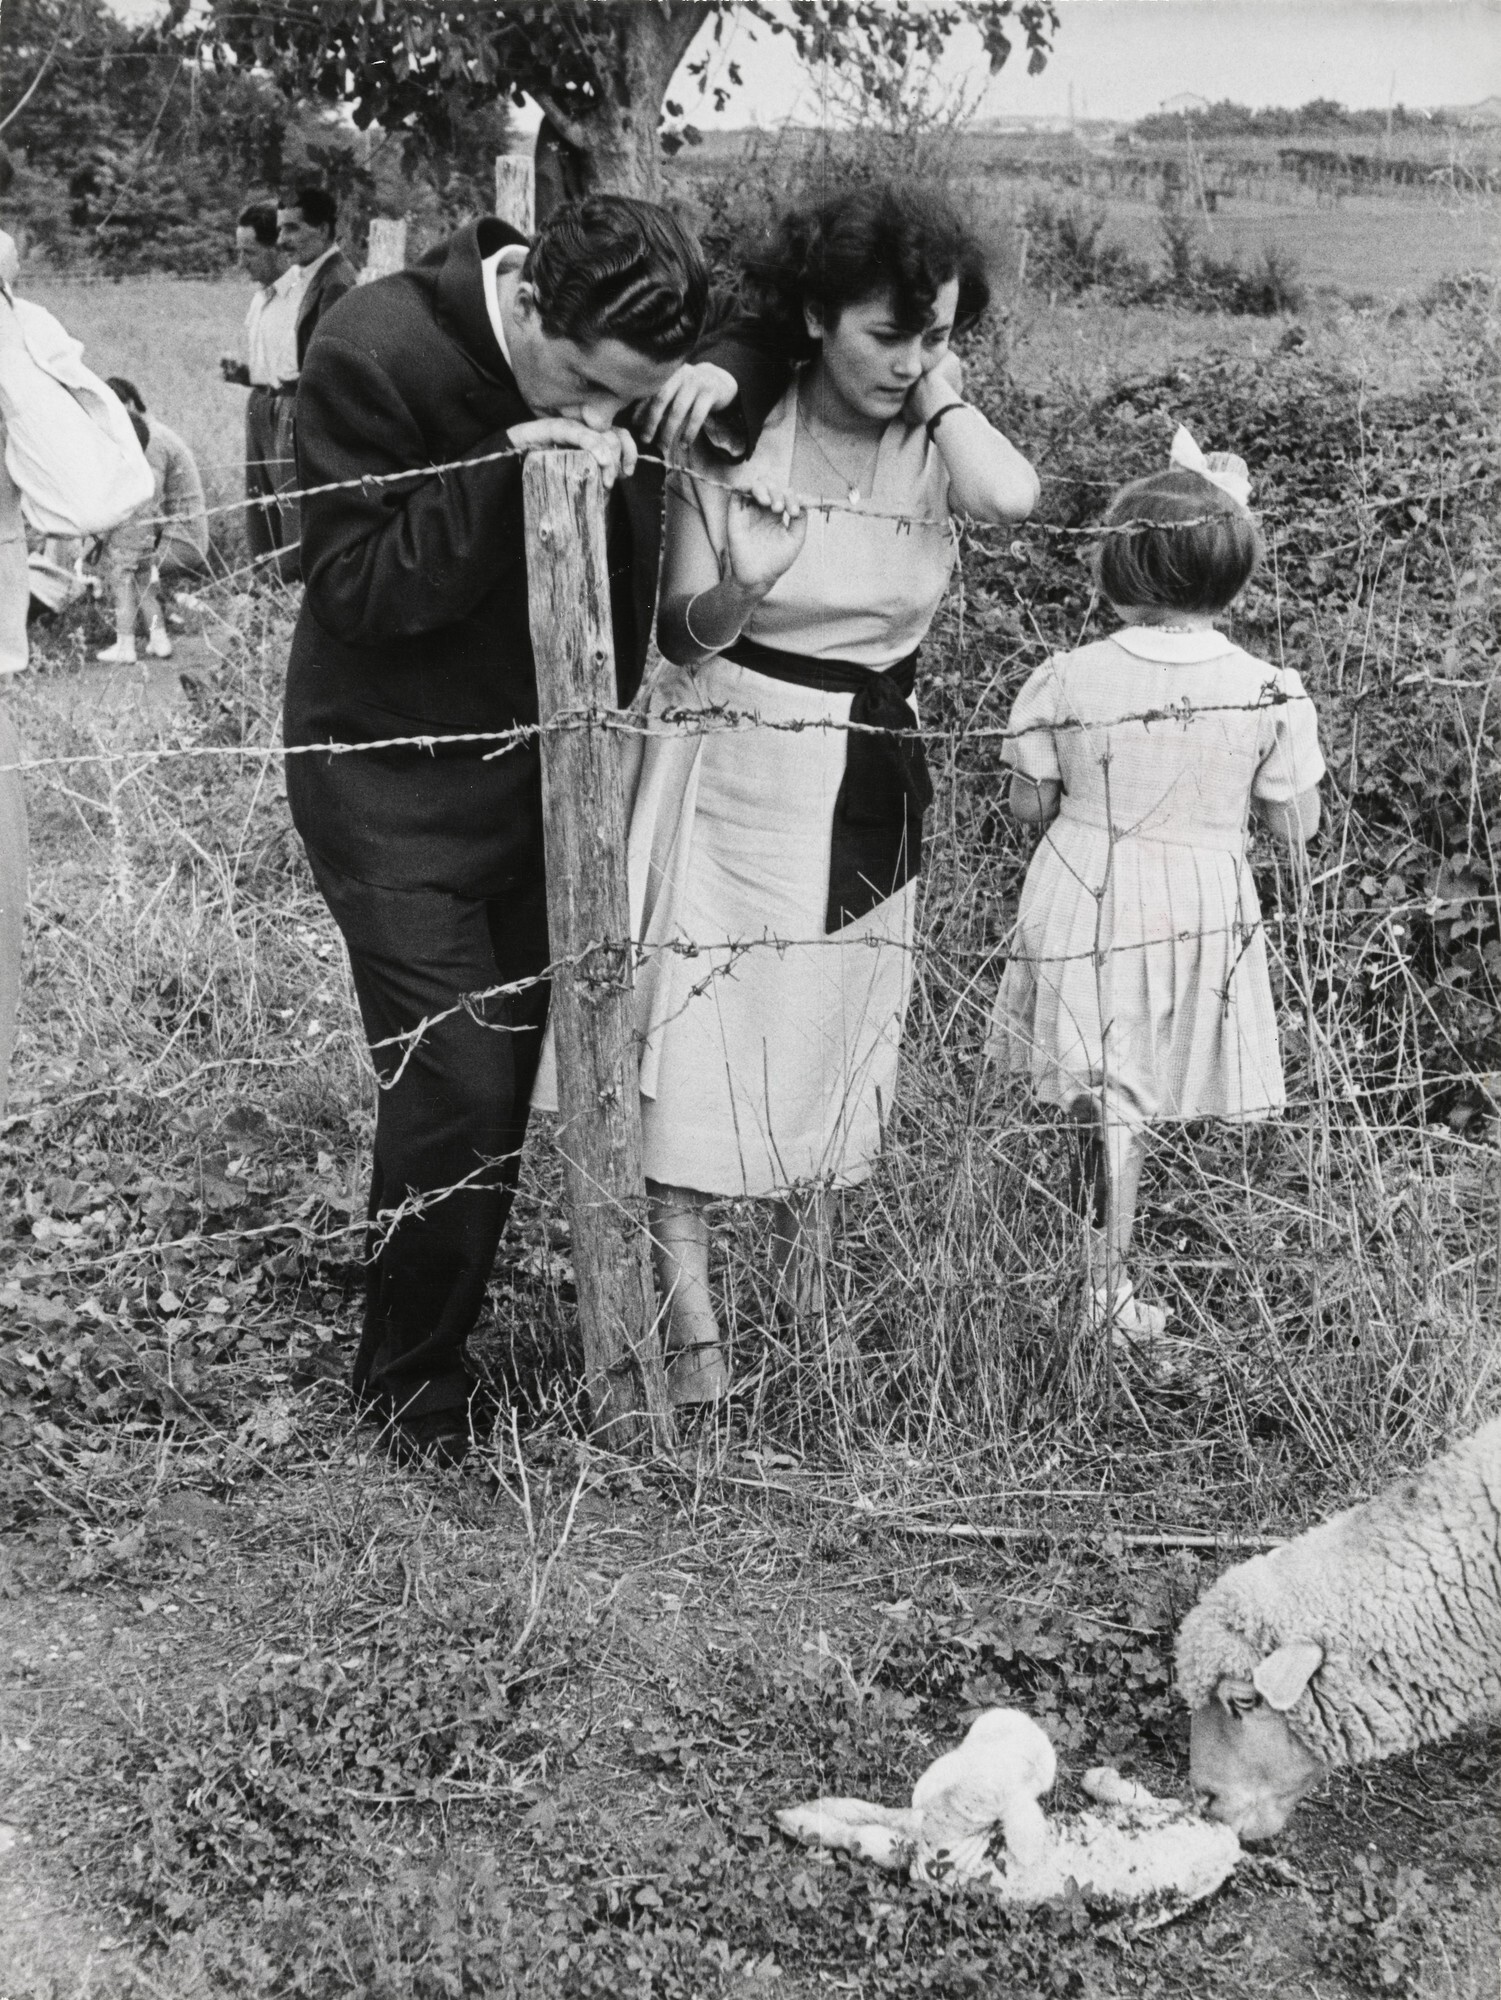 Альберто Росси и его невеста Россана Театини наблюдают за овечкой, ласкающей новорожденного ягнёнка, Италия, 1953. Фотограф Анри Картье-Брессон